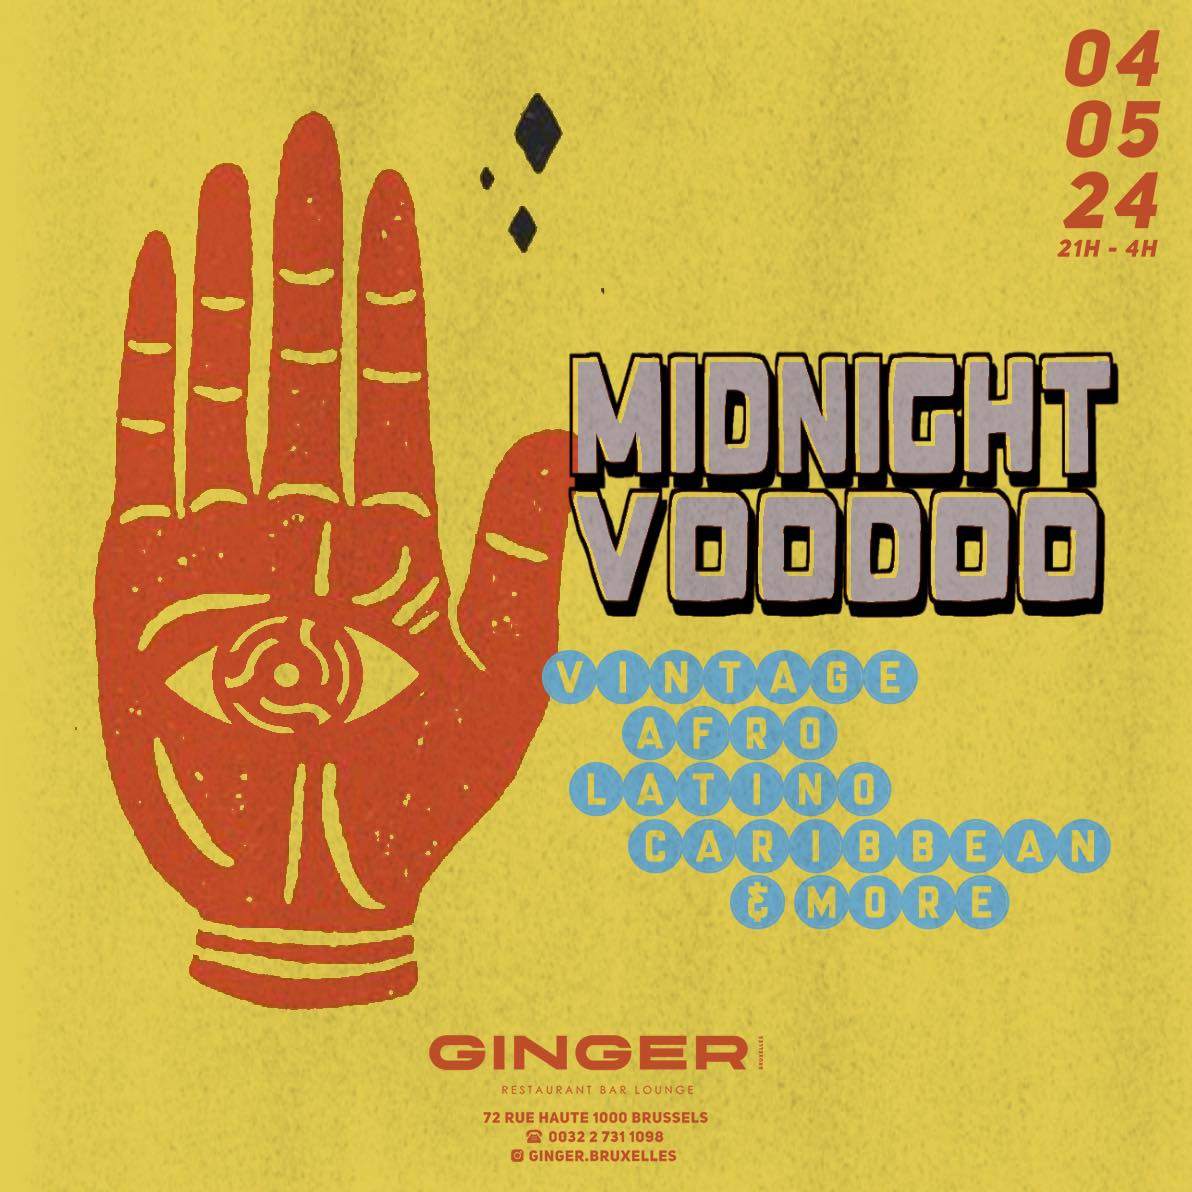 Midnight Voodoo at Ginger - Página frontal